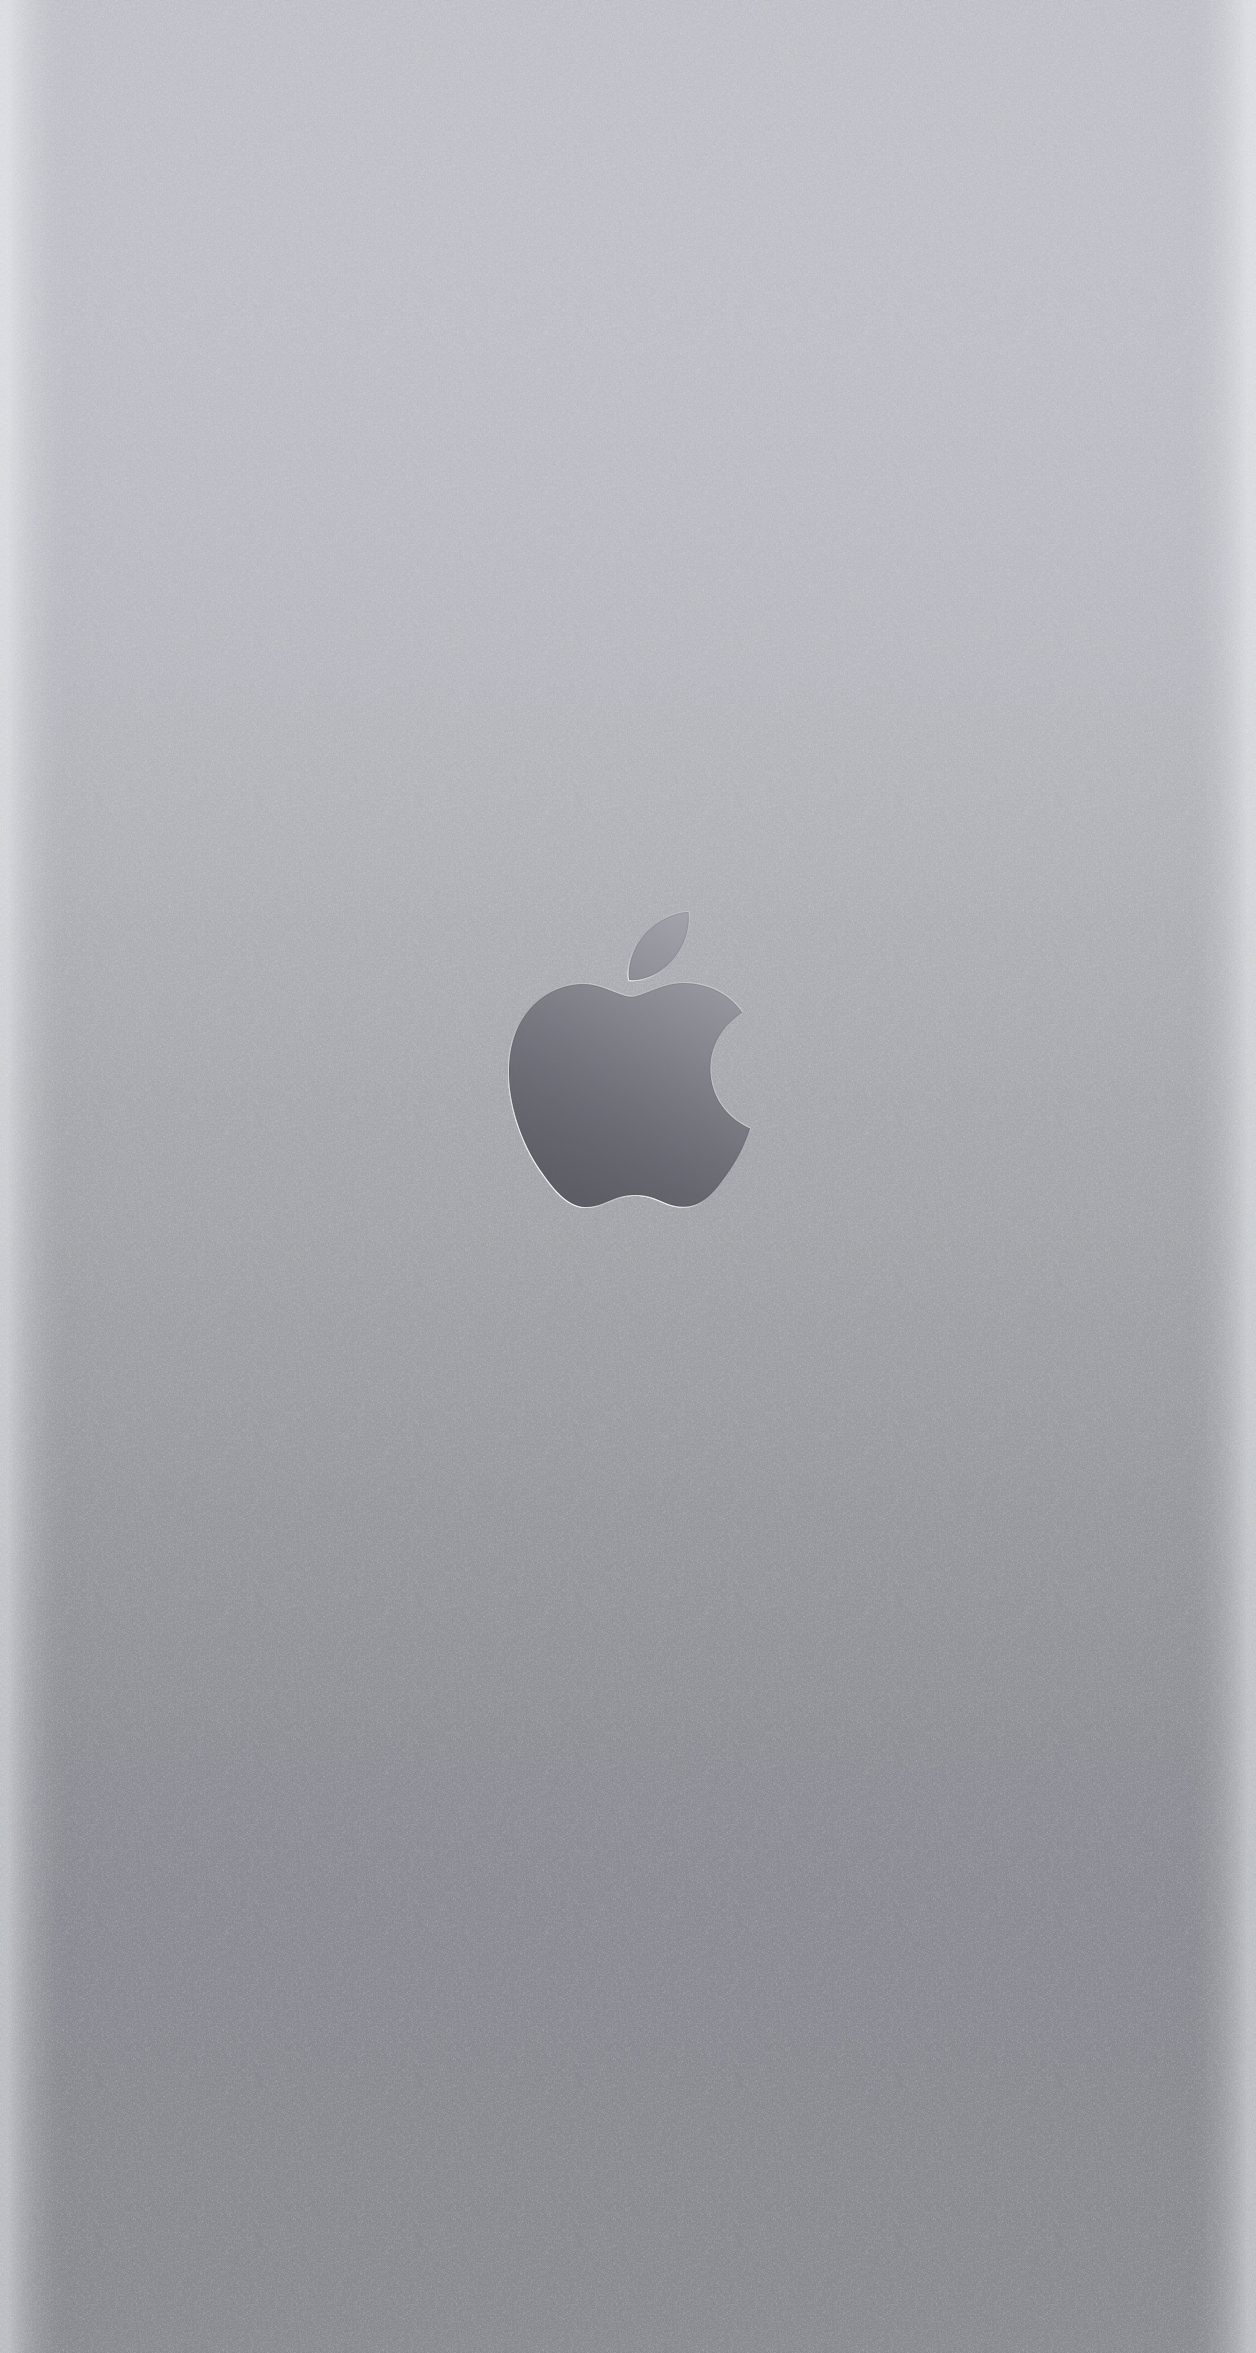 Fonds D Cran iPhone iPad Mac Avec Logo Apple En Gris Sid Ral Argent